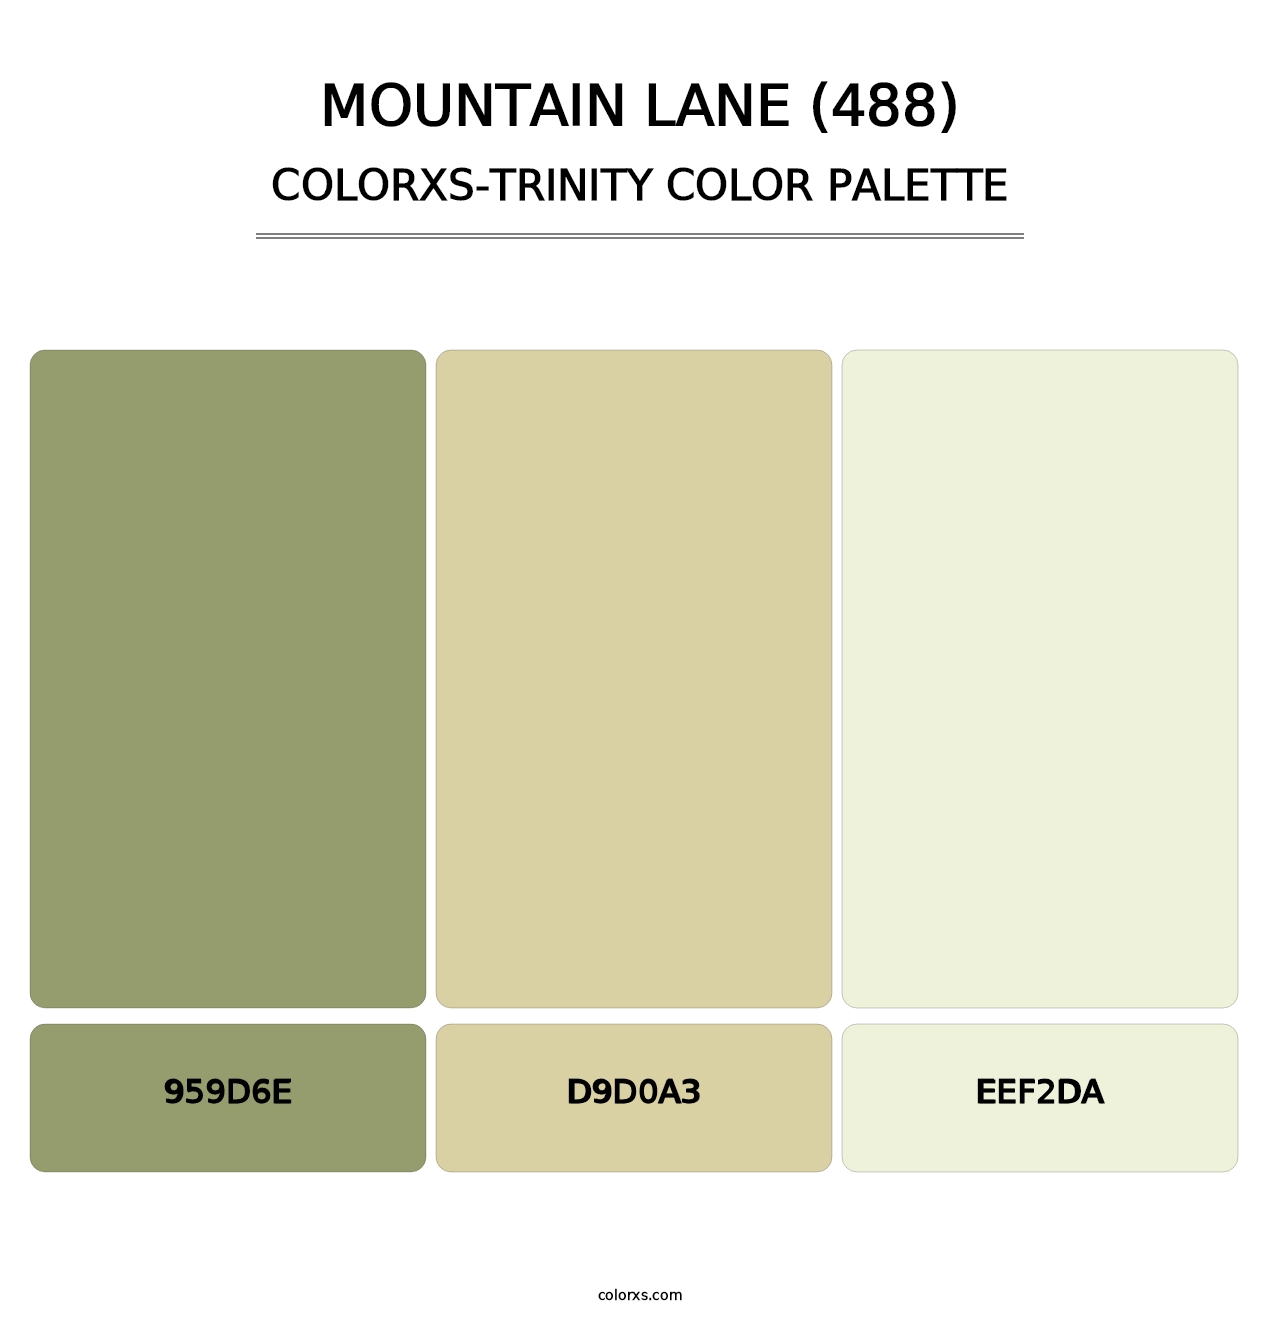 Mountain Lane (488) - Colorxs Trinity Palette